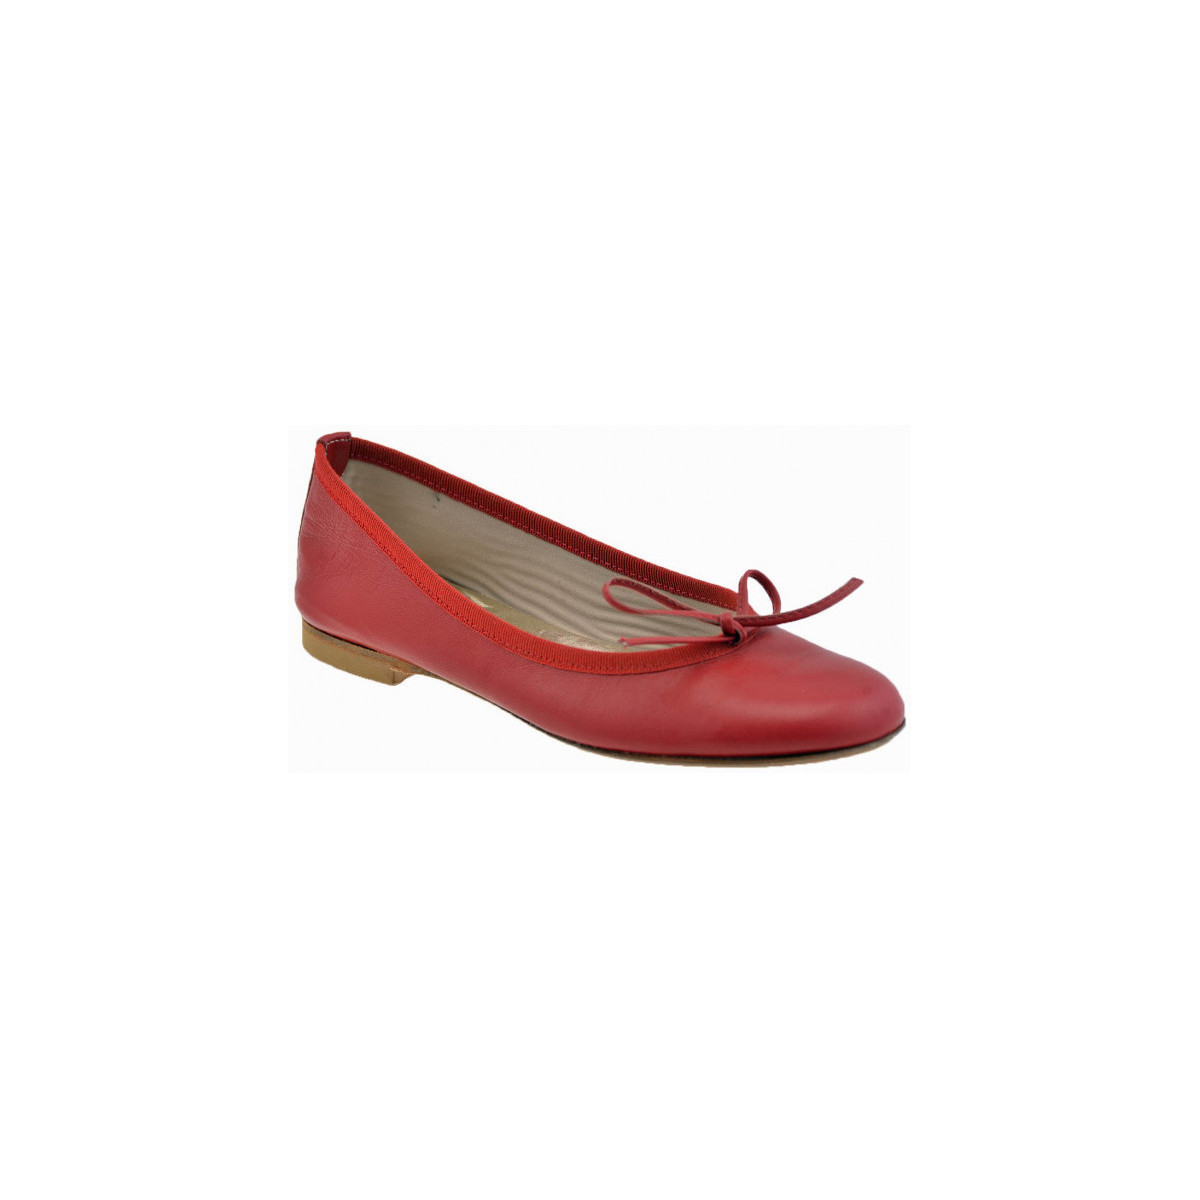 Sapatos Mulher Sapatilhas Keys Classica Vermelho